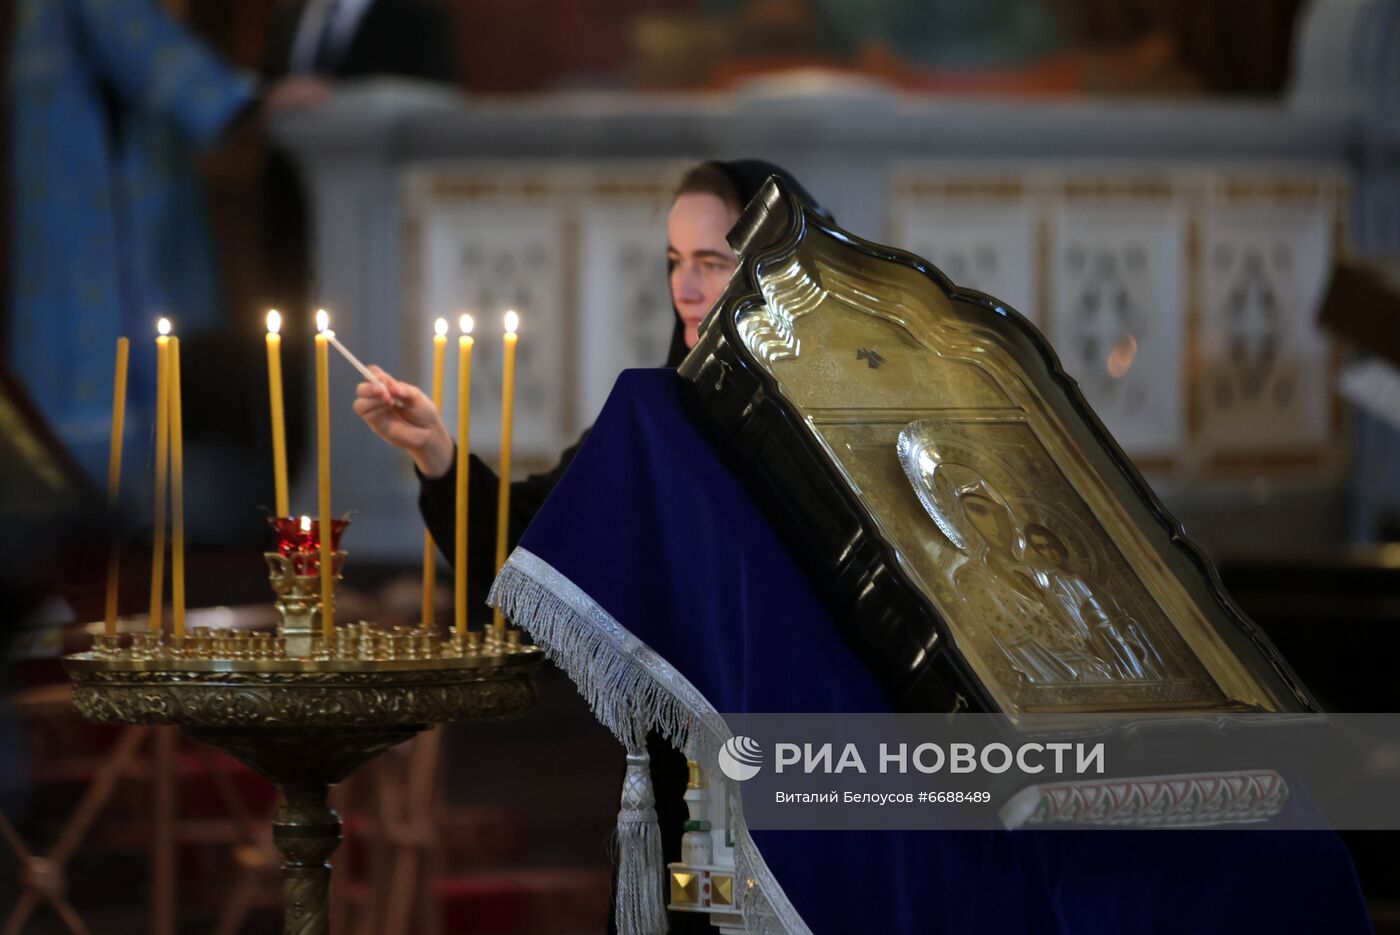 Божественная литургия в праздник Казанской иконы Божией Матери